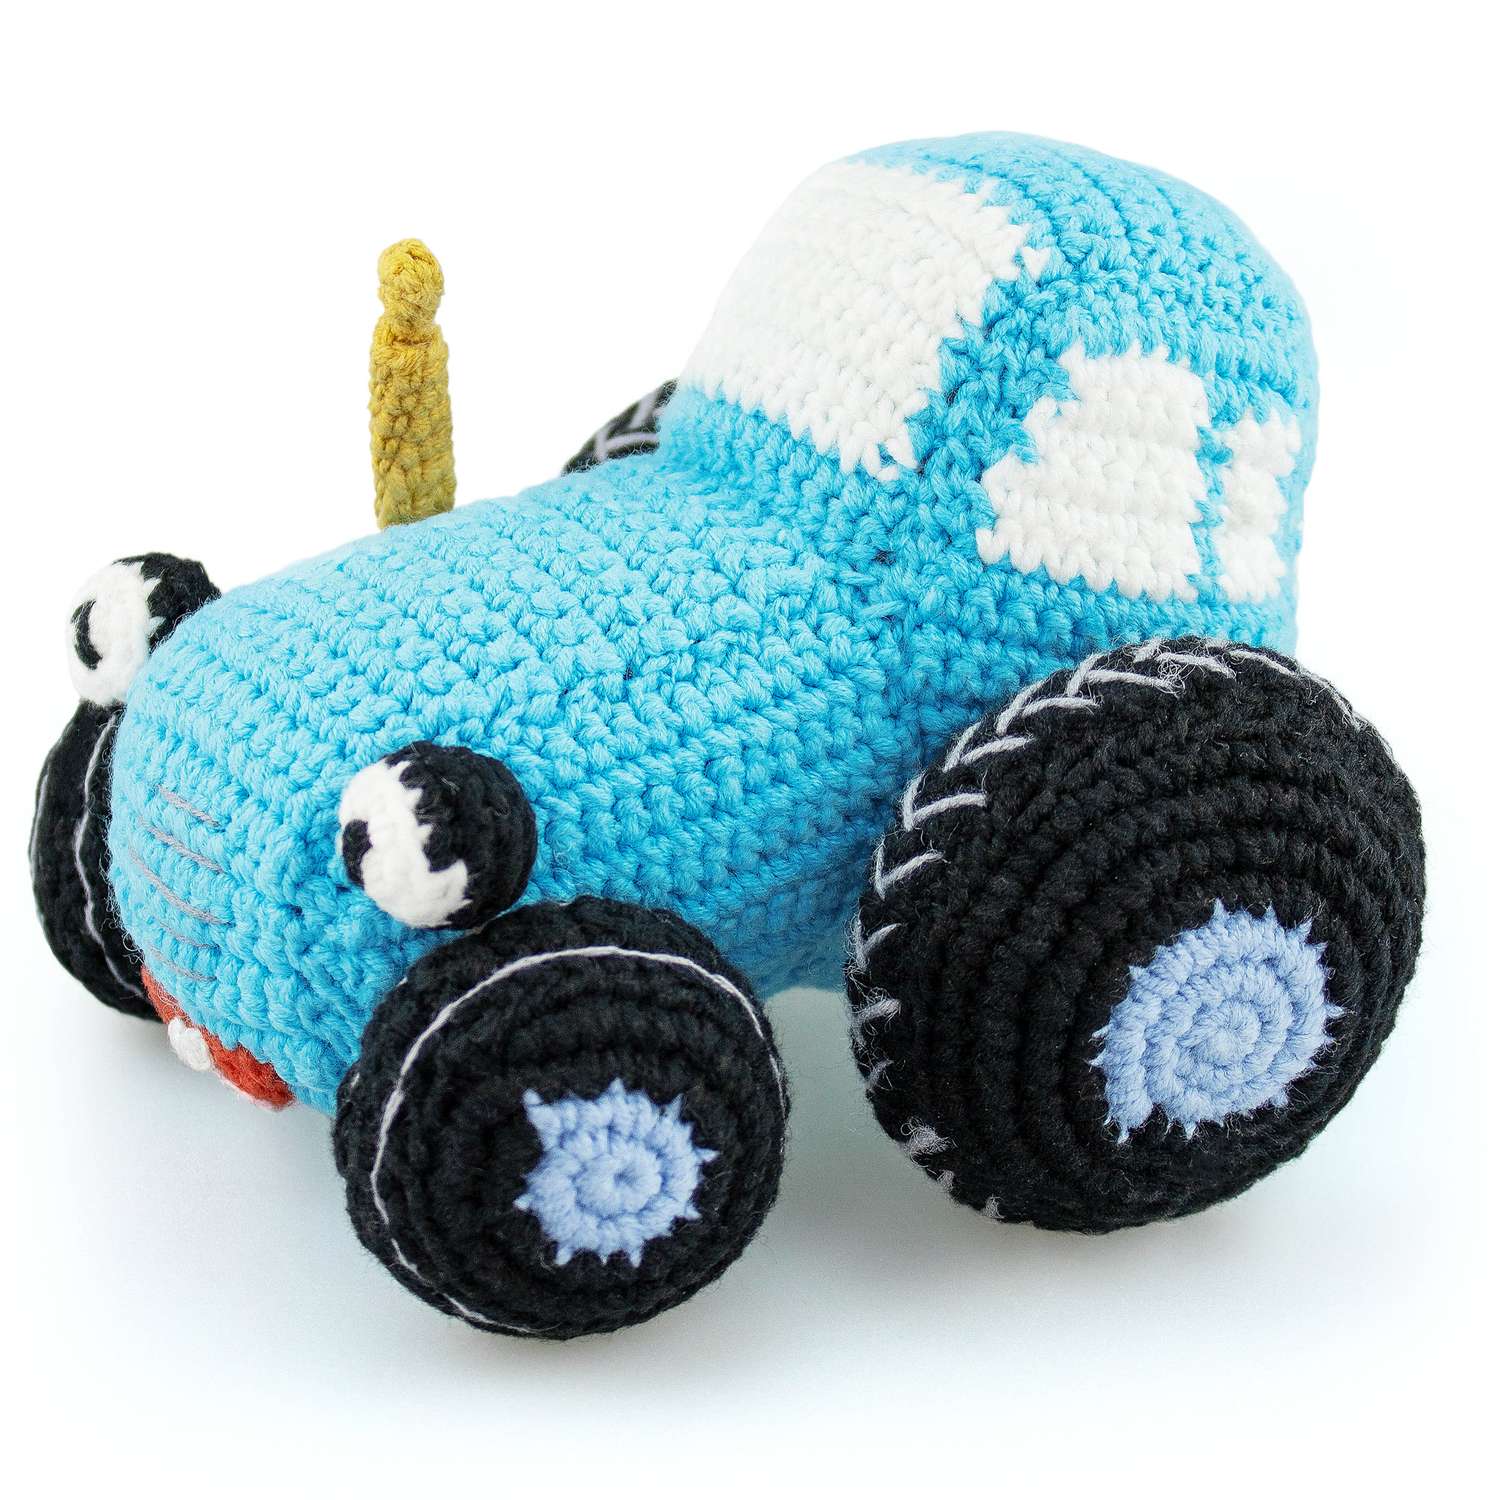 Мягкая игрушка Синий трактор вязаная игрушка Синий Трактор - фото 1